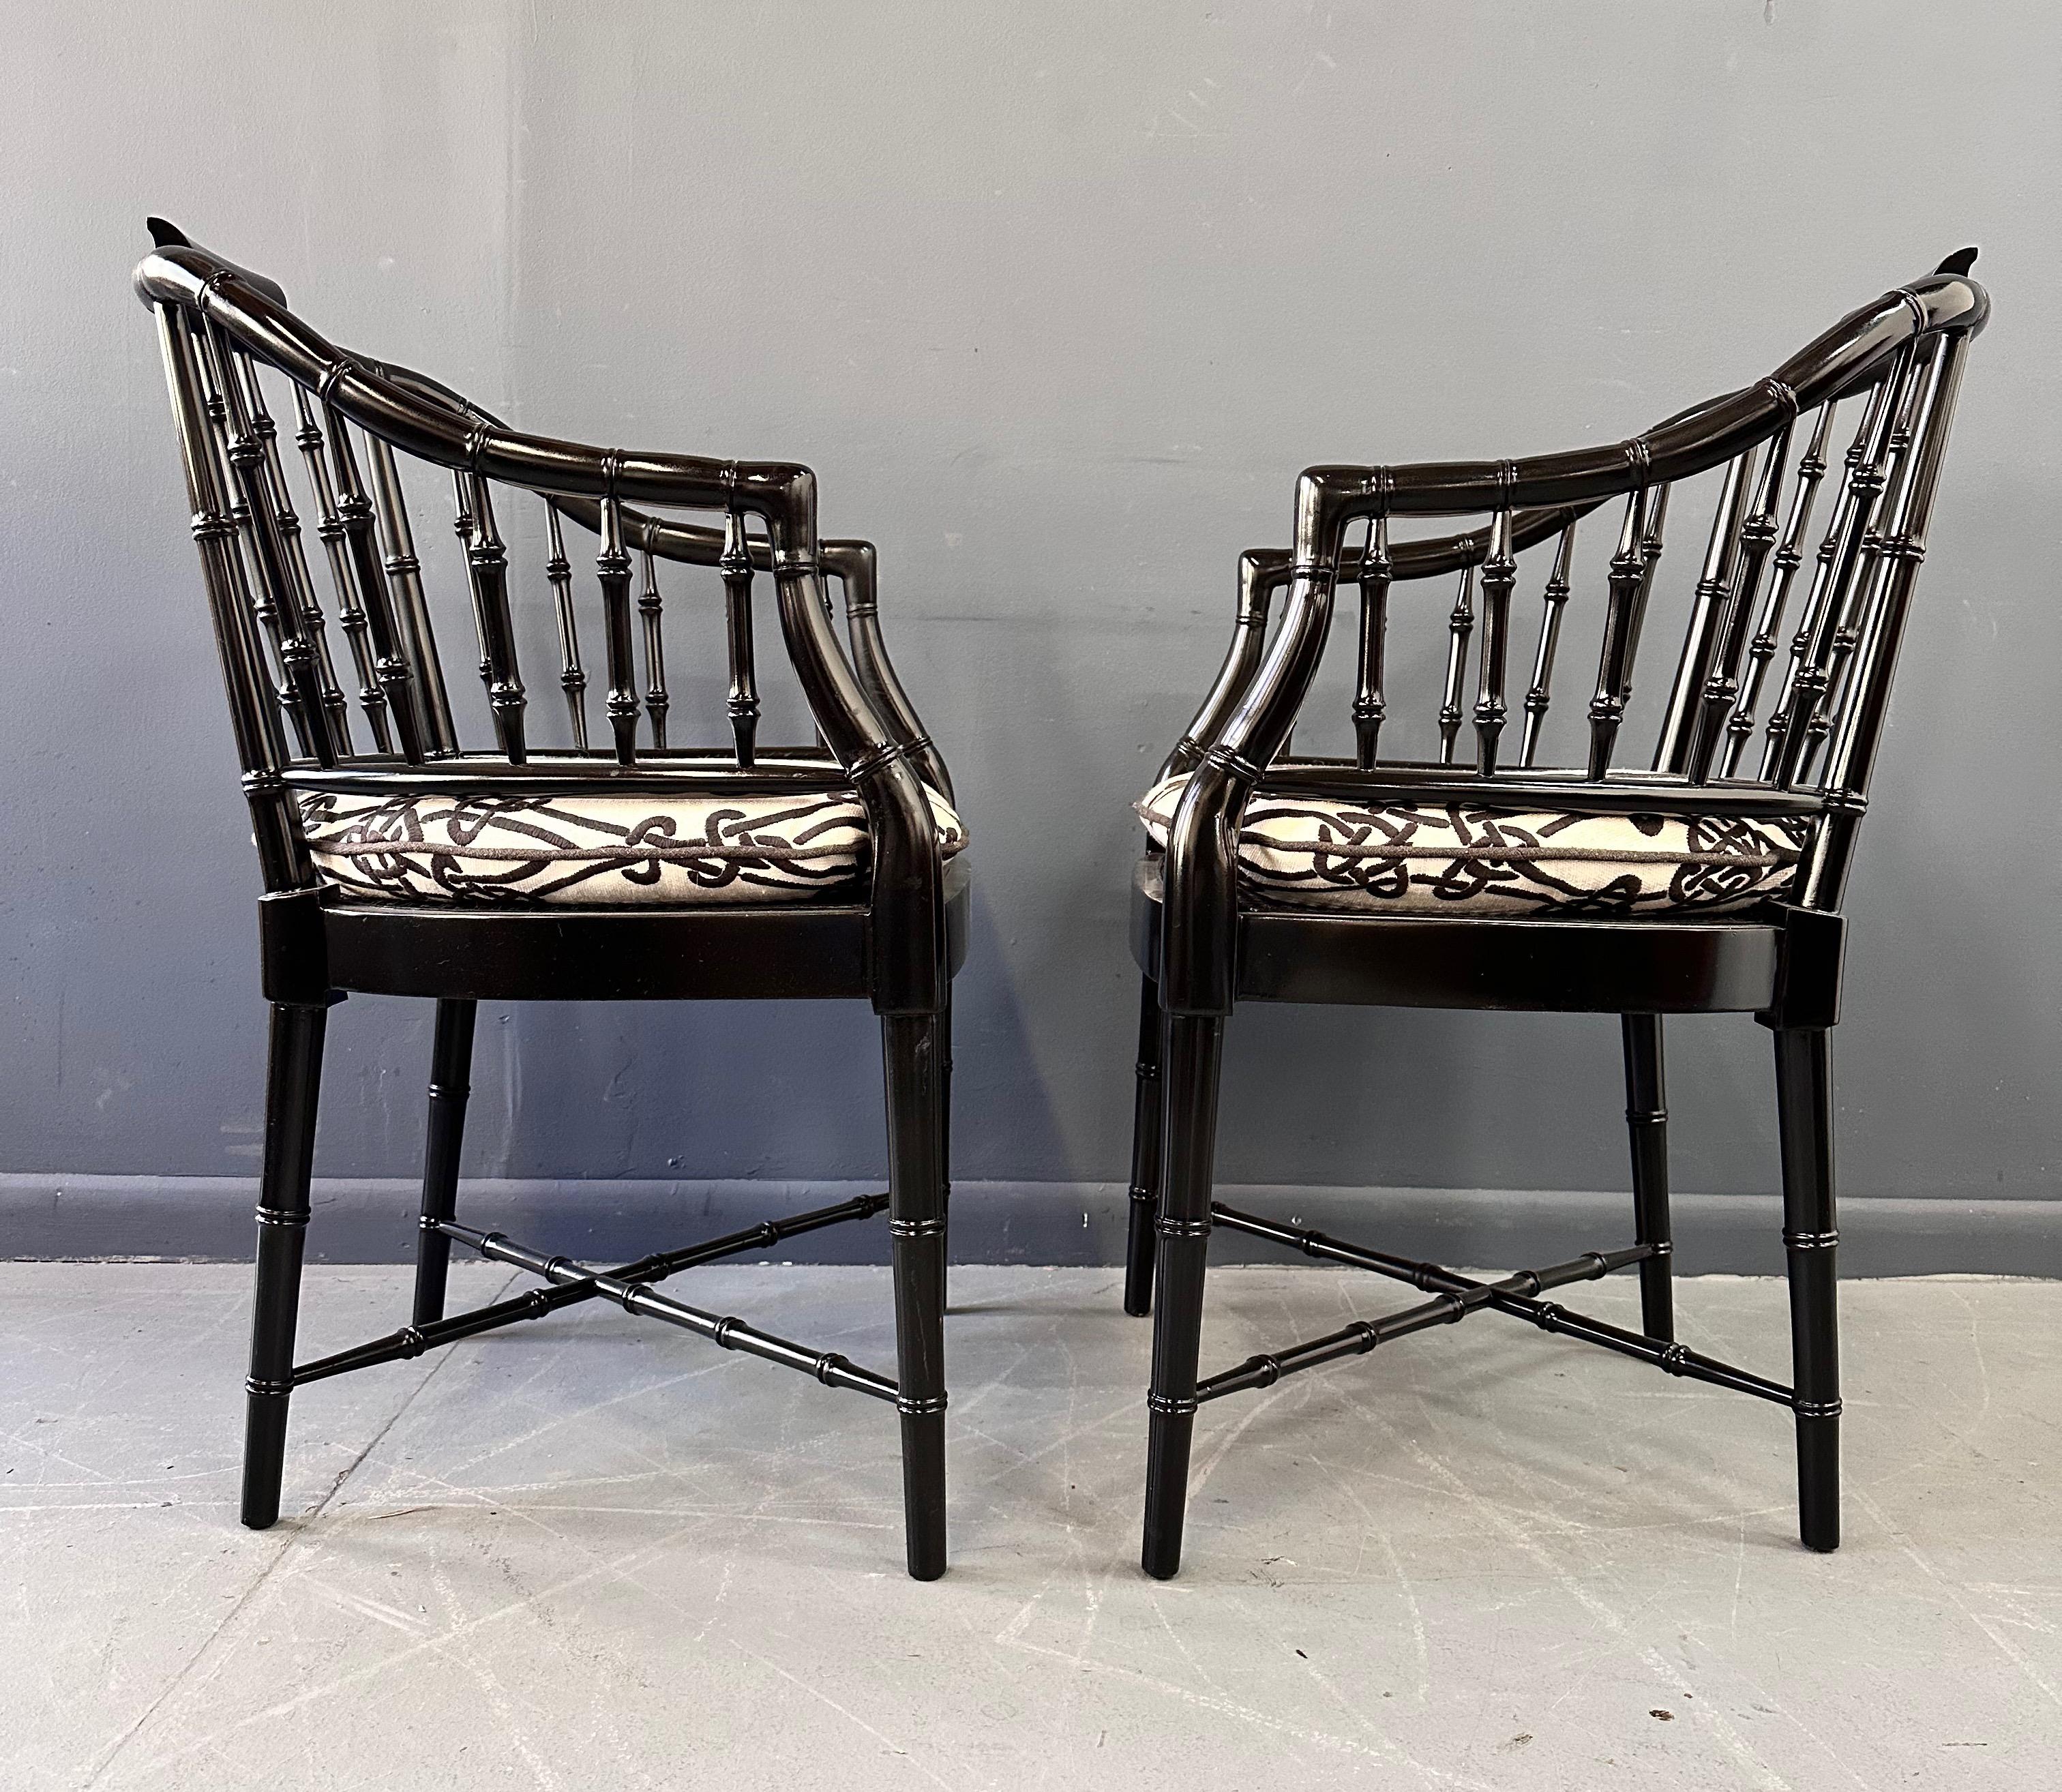 Chaise asiatique classique produite par Baker Furniture dans les années 1960. Ils se caractérisent par une construction en bois massif laqué noir et des coussins cousus sur mesure. Propre et prêt à l'emploi.